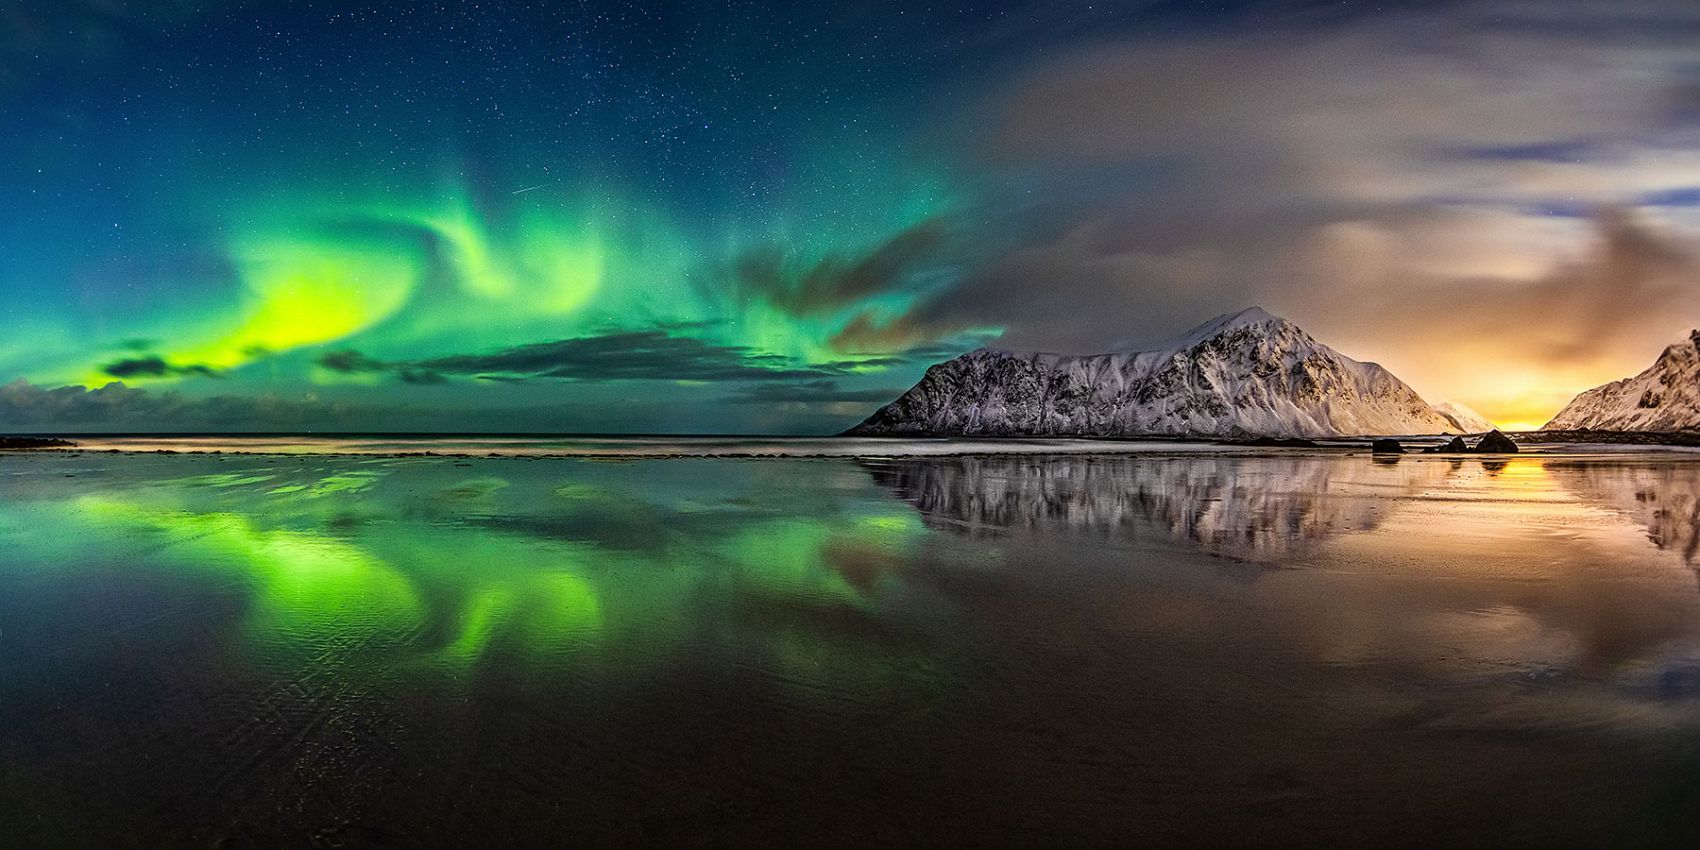 Aurora Borealis, Nordlichter in Norwegen am Skagsanden beach (88_MG_6389_9)